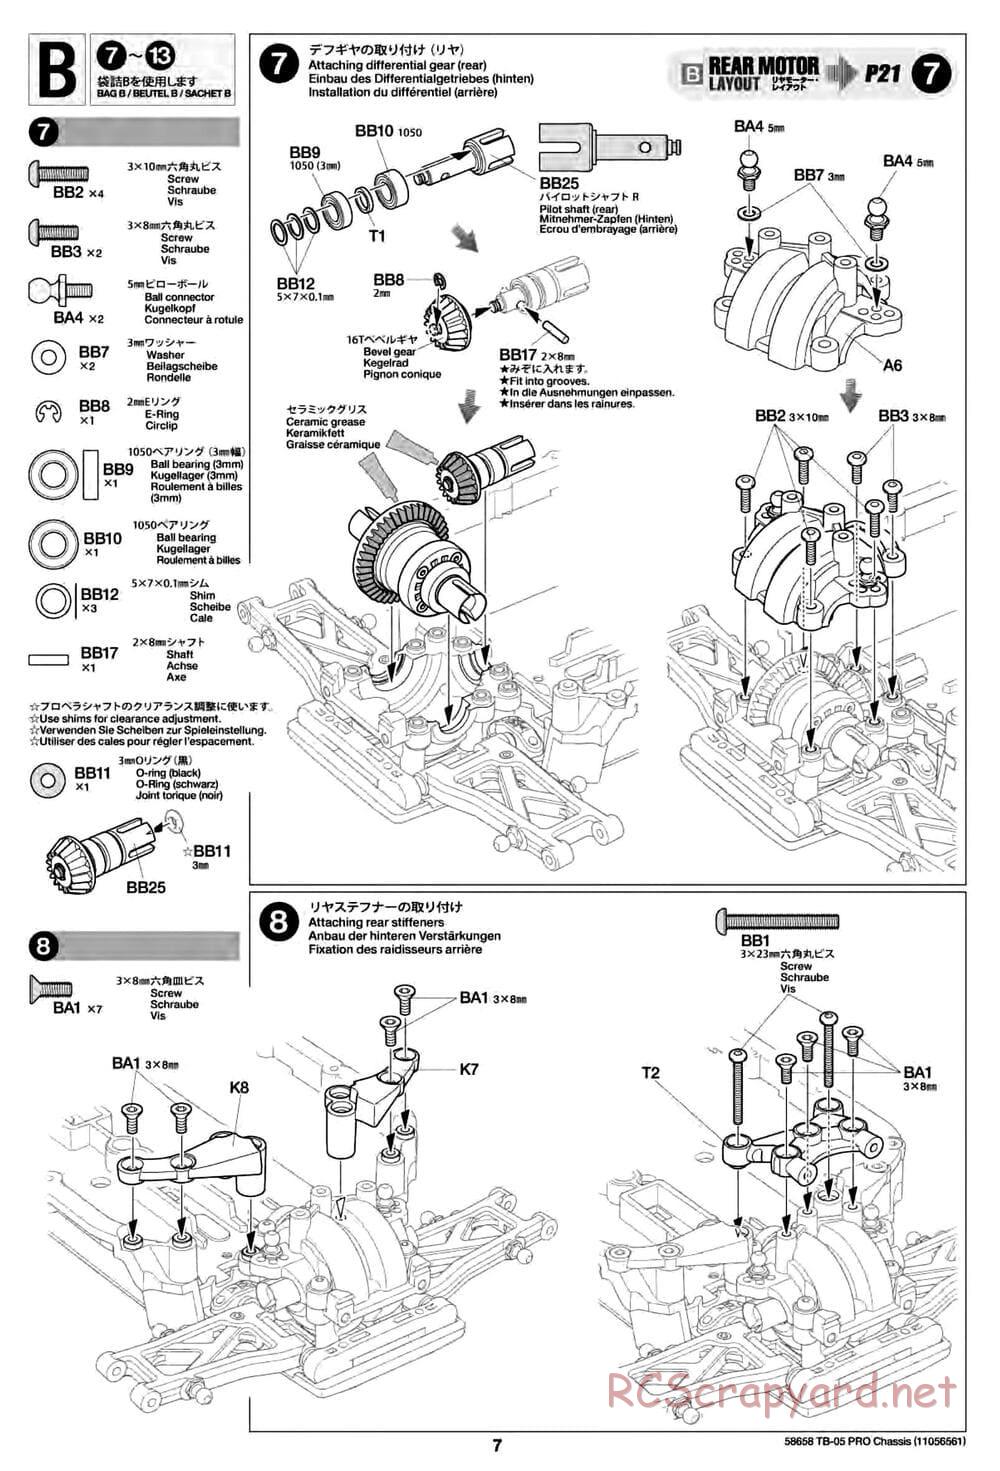 Tamiya - TB-05 Pro Chassis - Manual - Page 7